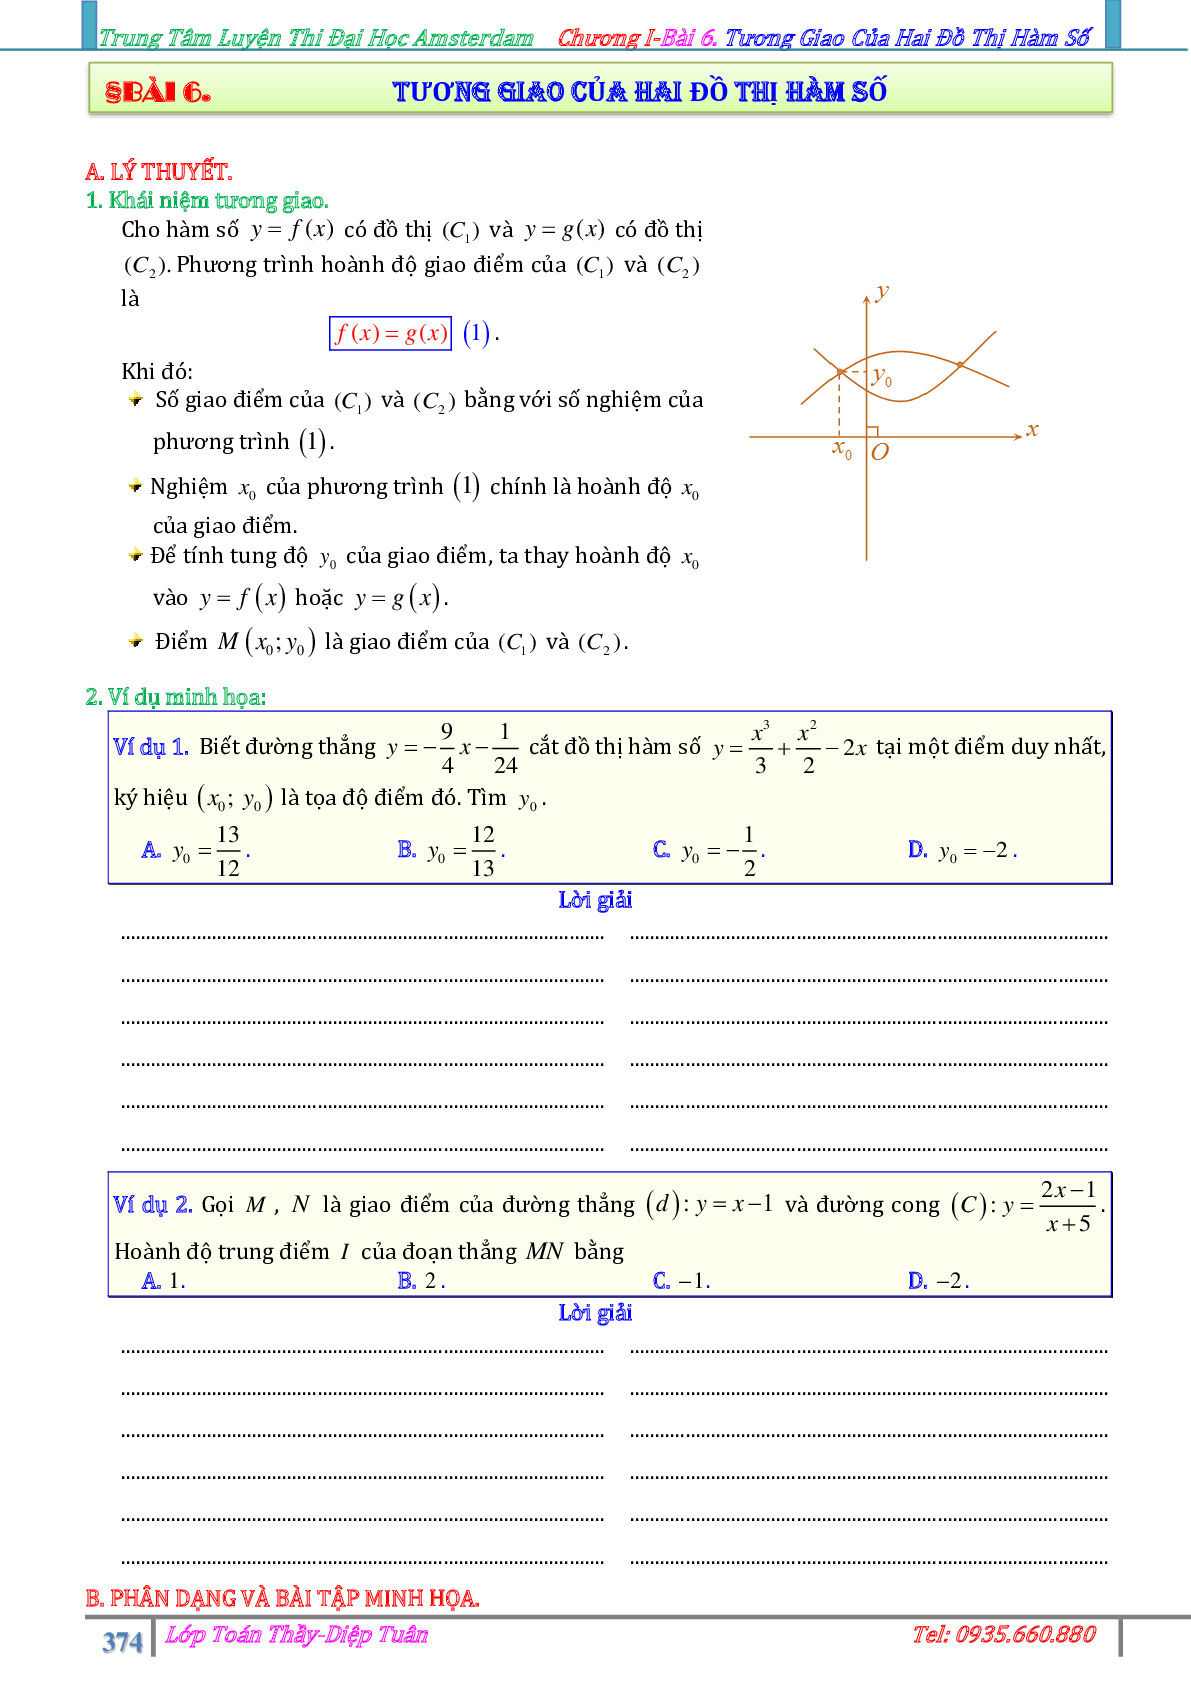 Phương pháp giải Sự tương giao giữa hai đồ thị hàm số 2023 (lý thuyết và bài tập) (trang 1)